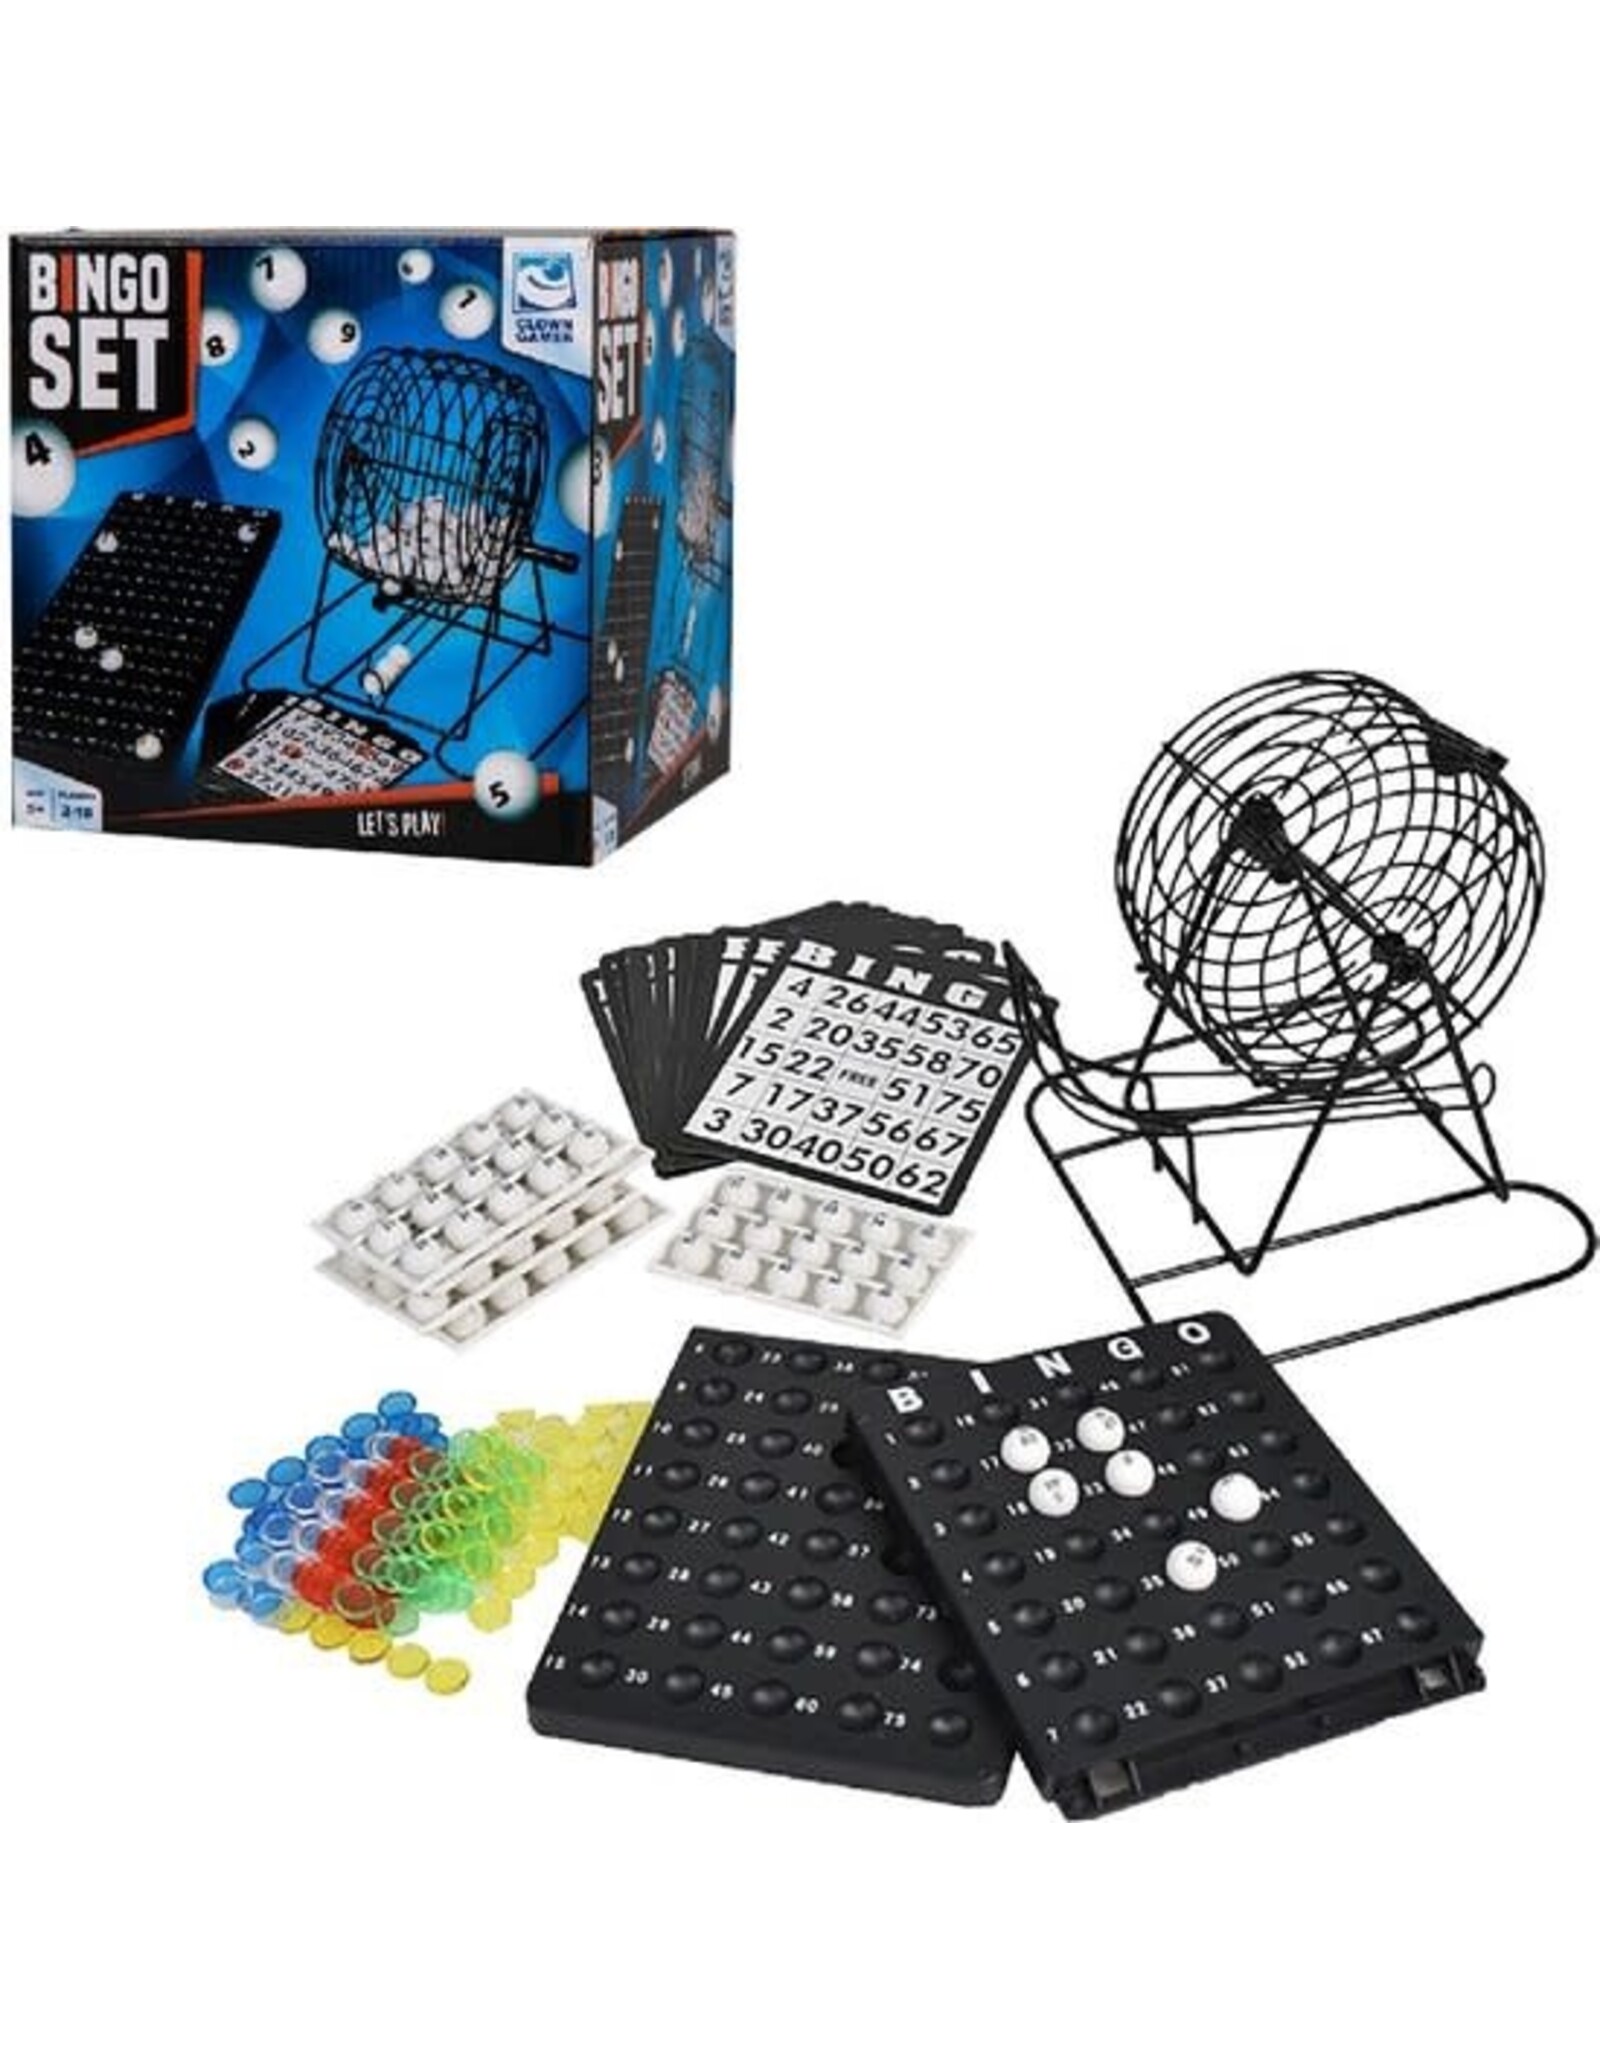 CLOWN GAMES Bingo spel zwart/wit complete set 19 cm nummers 1-75 - Bingospel - Bingo spellen - Bingomolen met bingokaarten - Bingo spelen